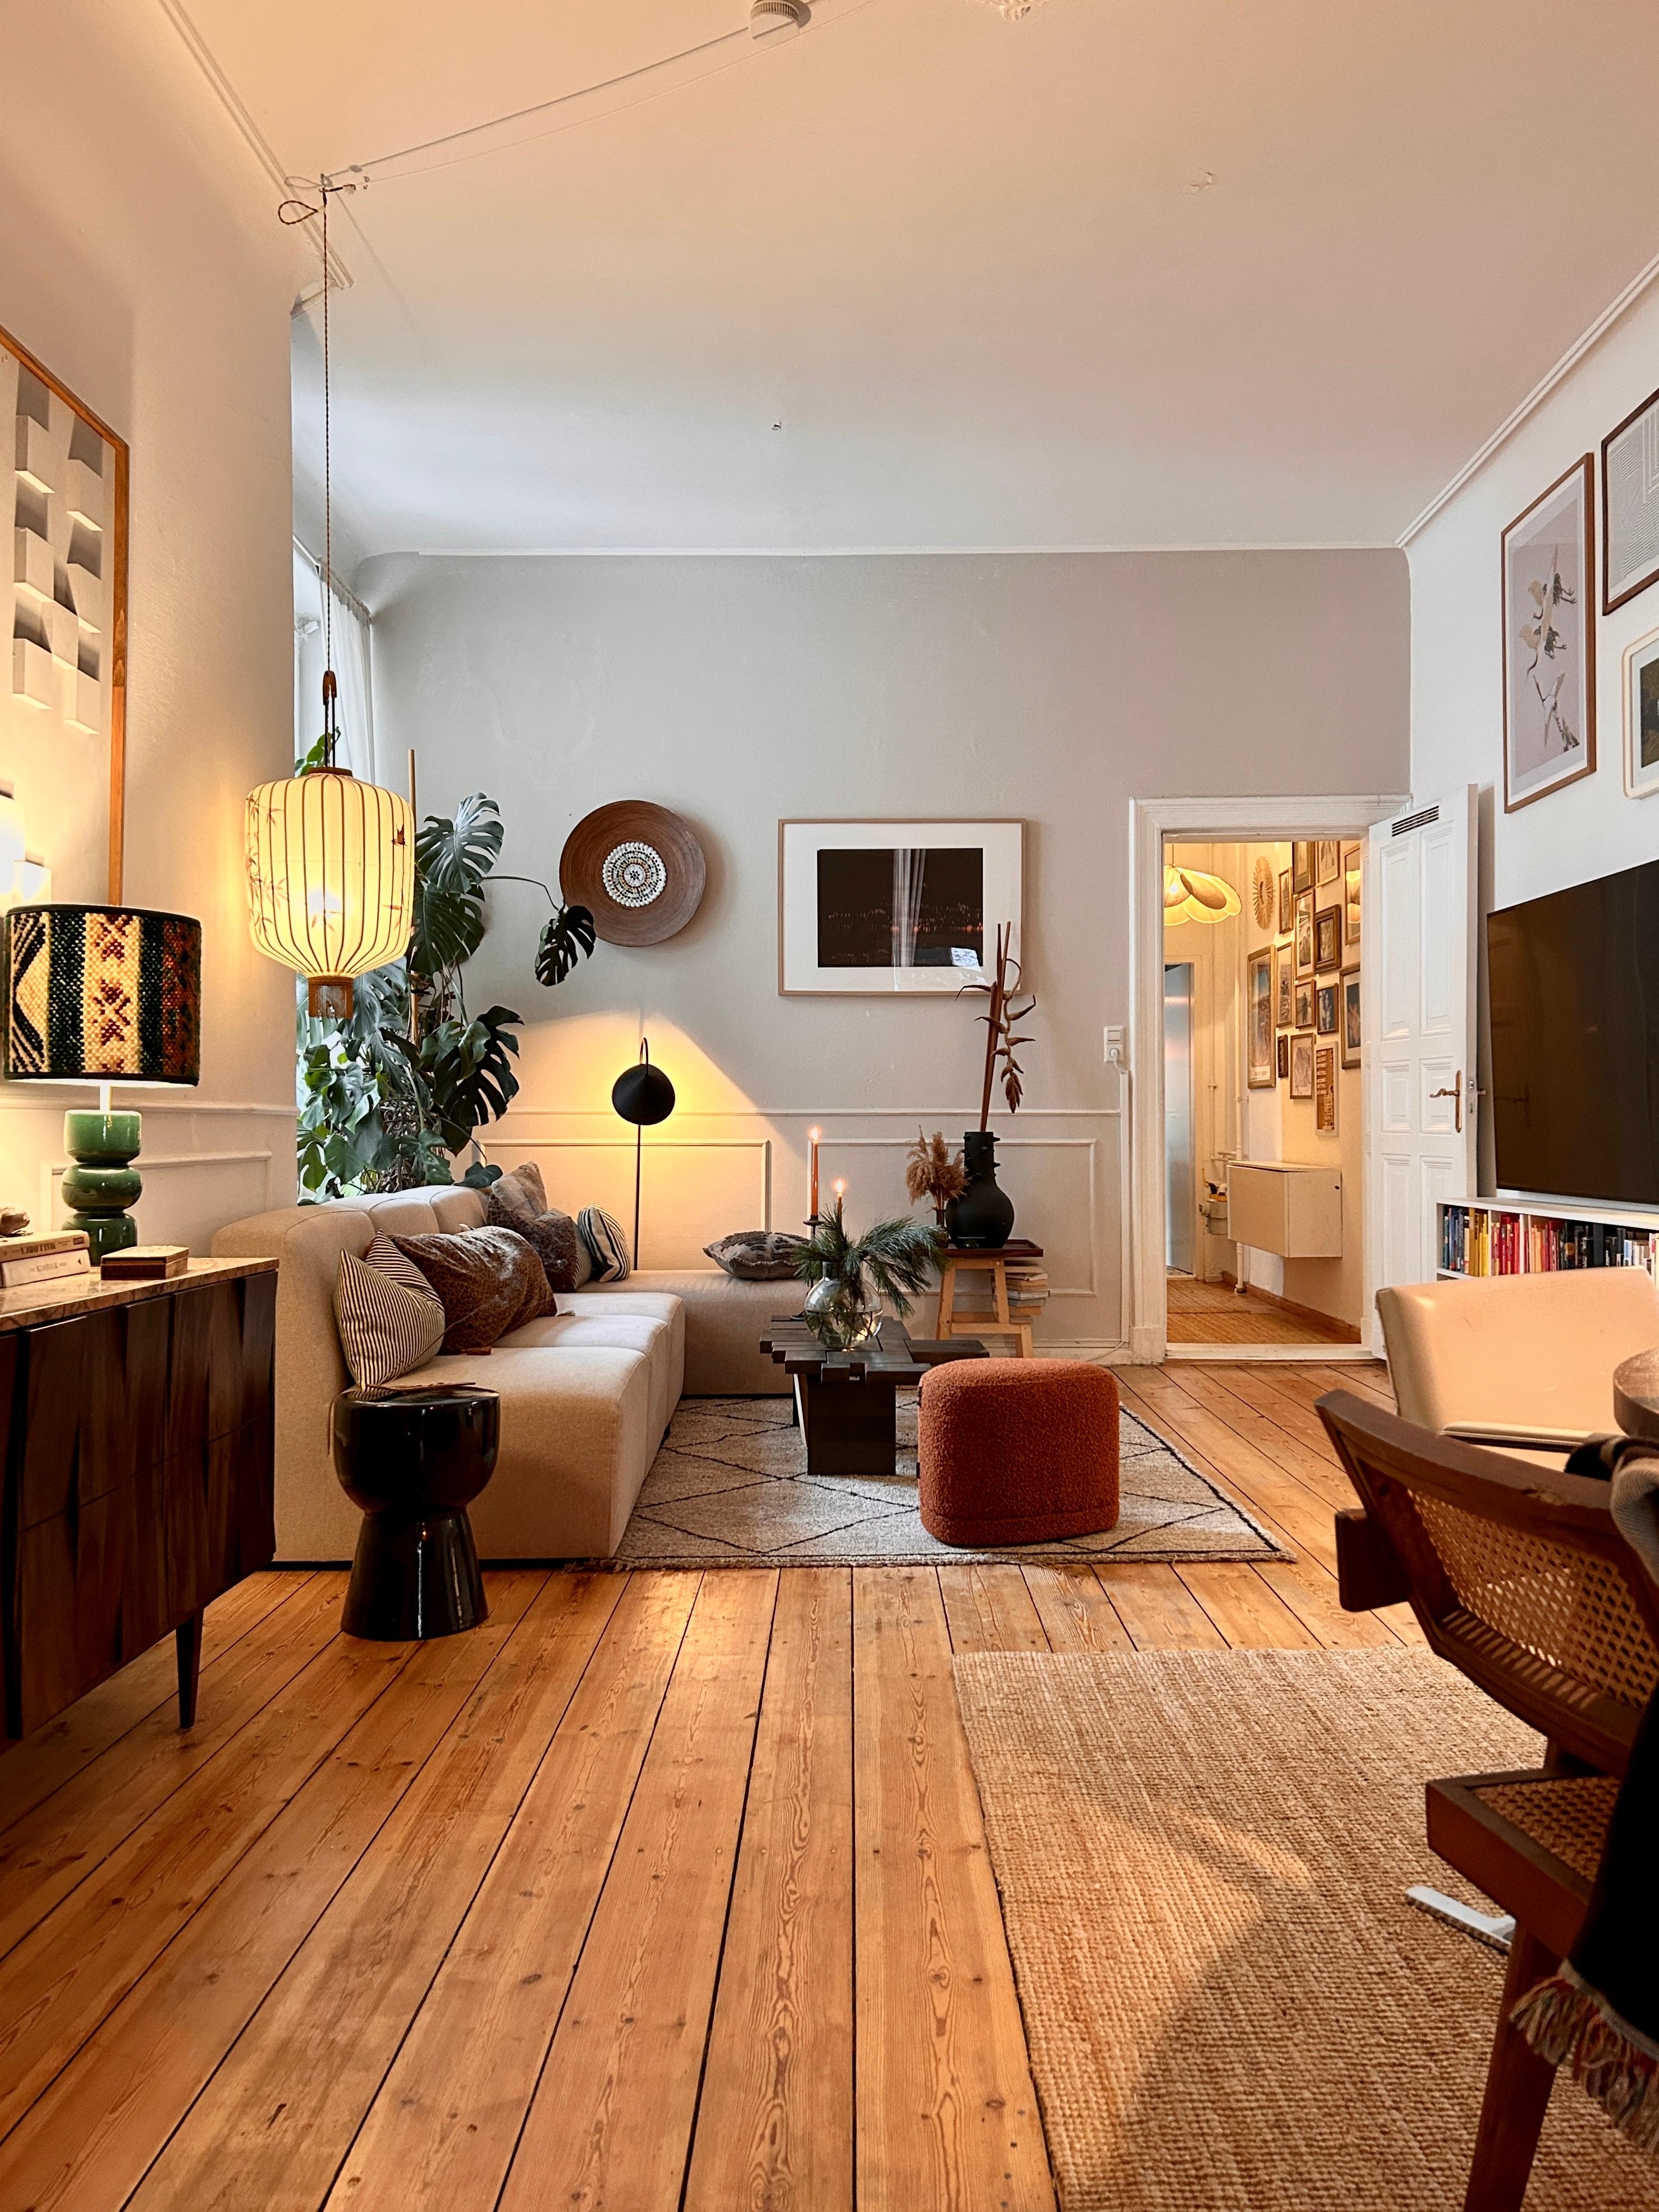 ♥️✨❄️ #wohnzimmer #couch #sofa #kunst #kommode #lampen #teppich #altbau #holzboden #stuck